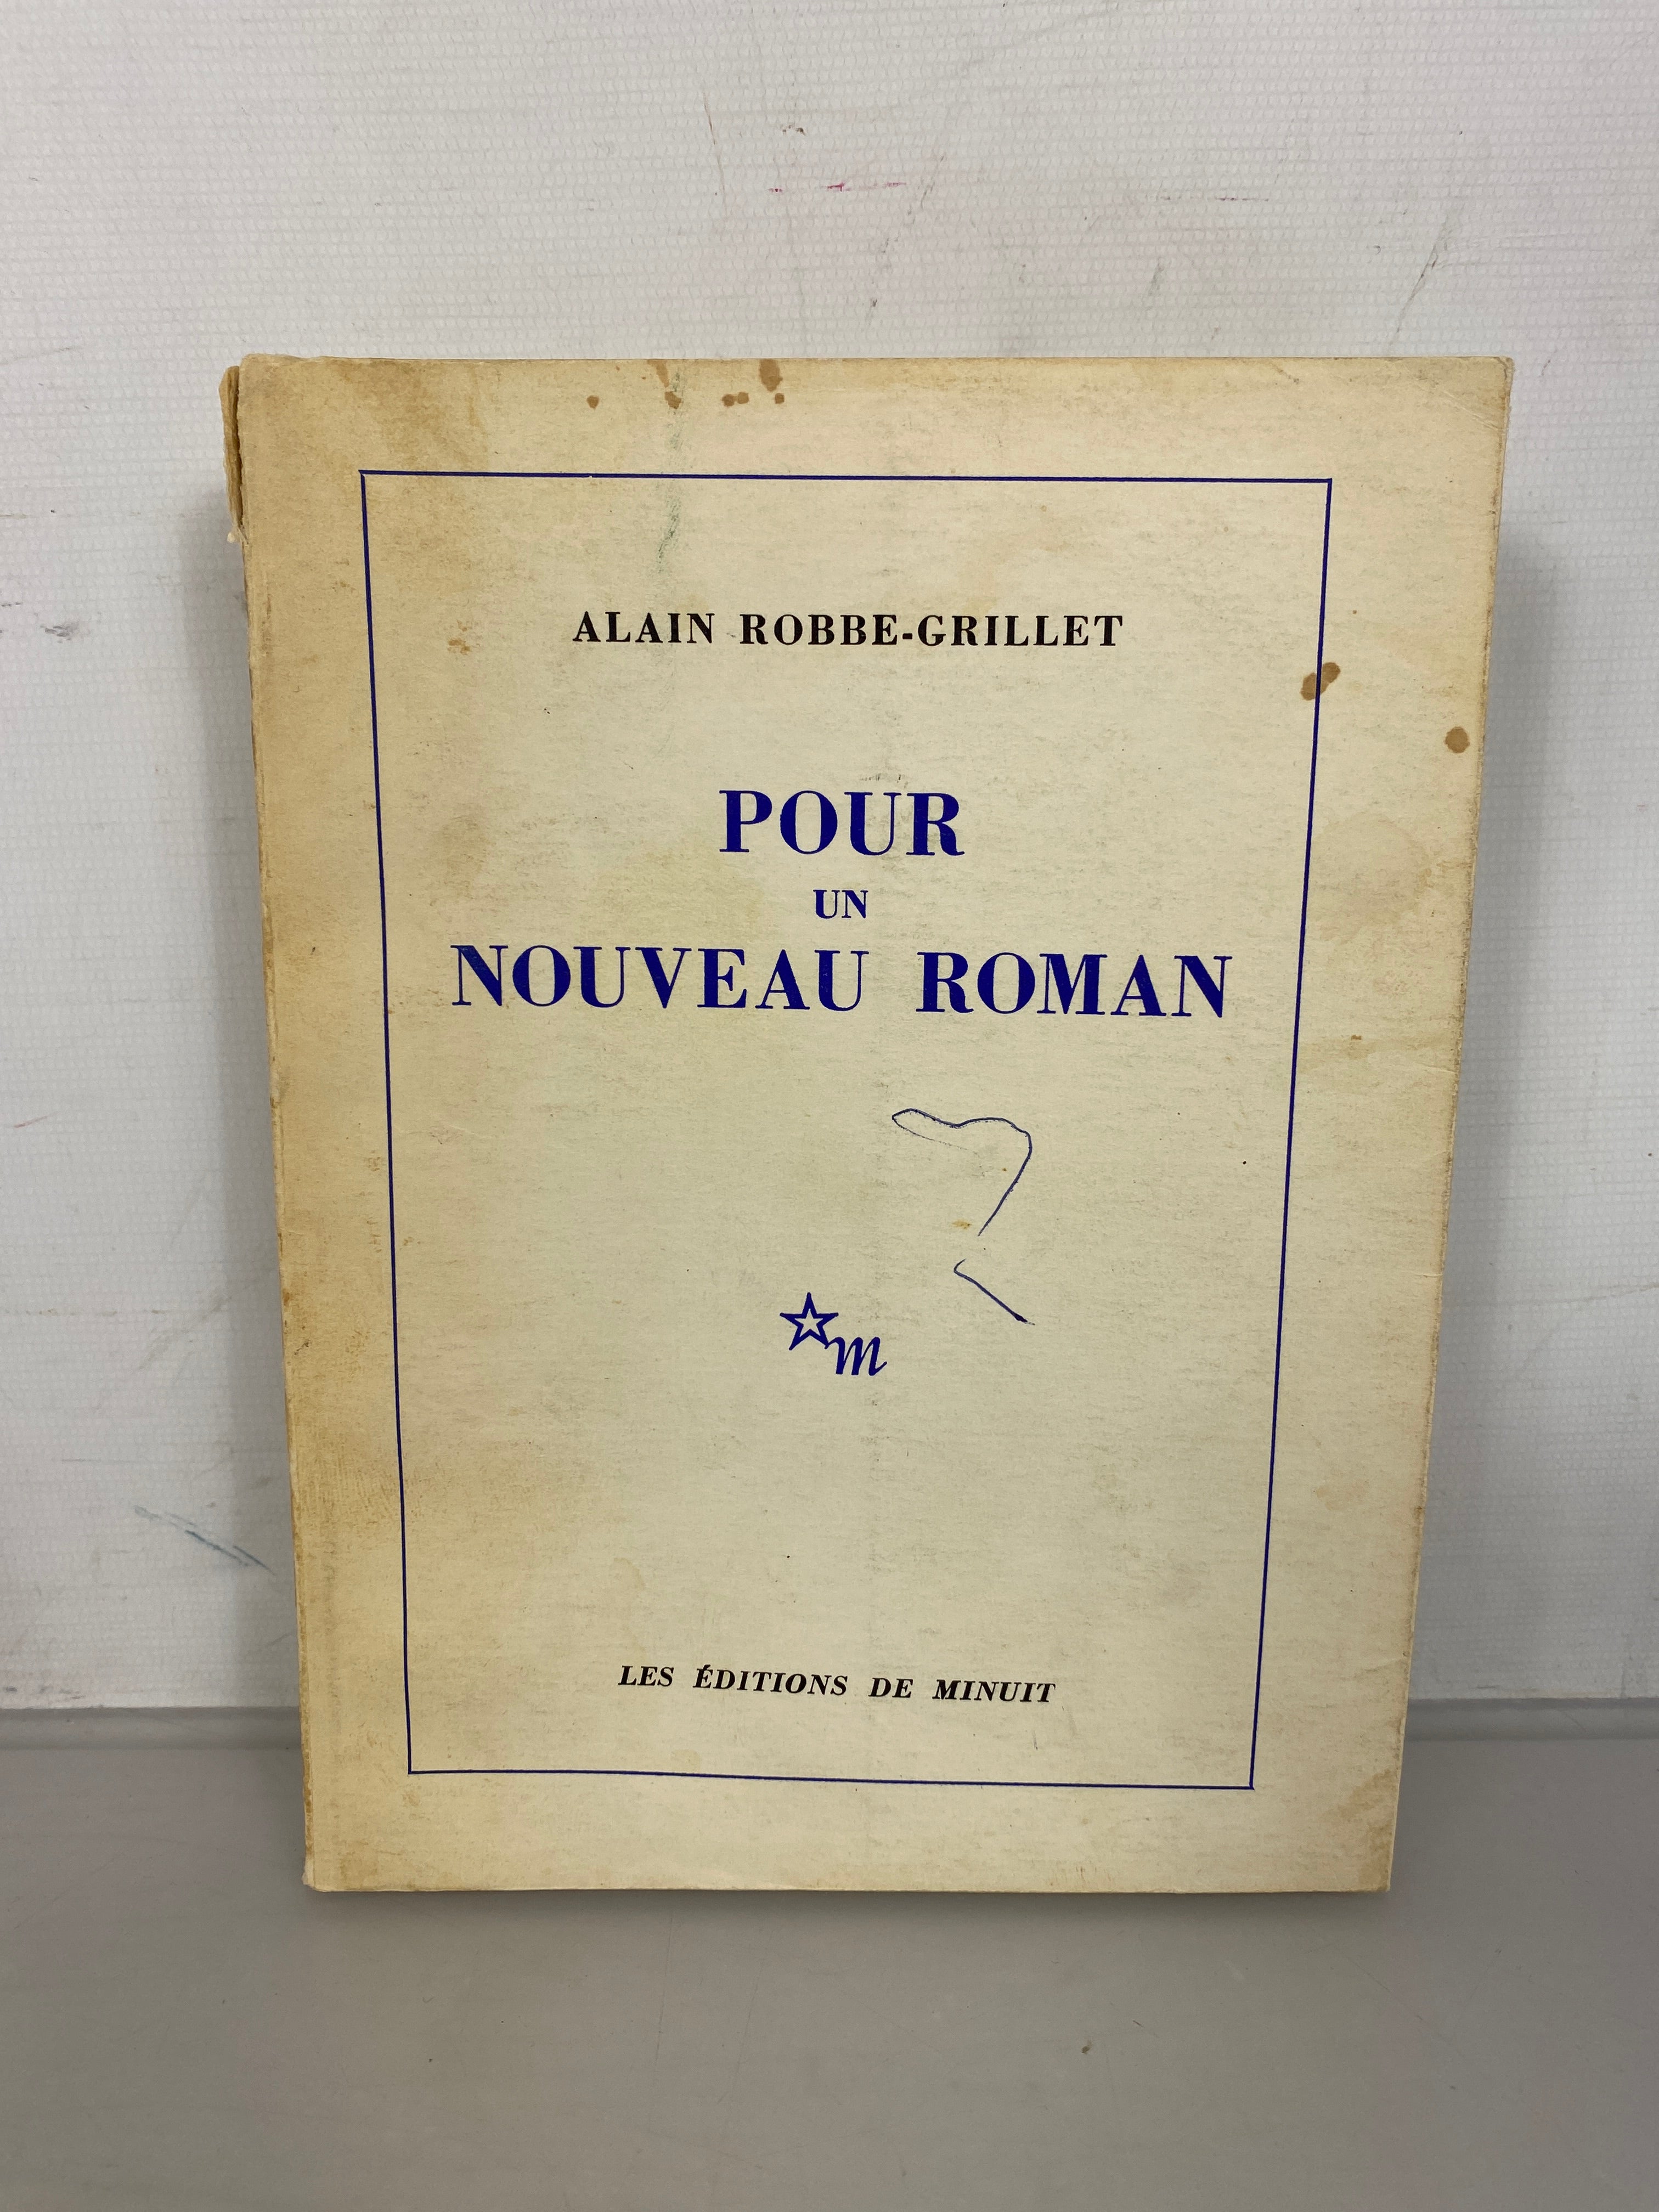 Pour un Nouveau Roman (For a New Novel) by Alain Robbe-Grillet 1963 SC French